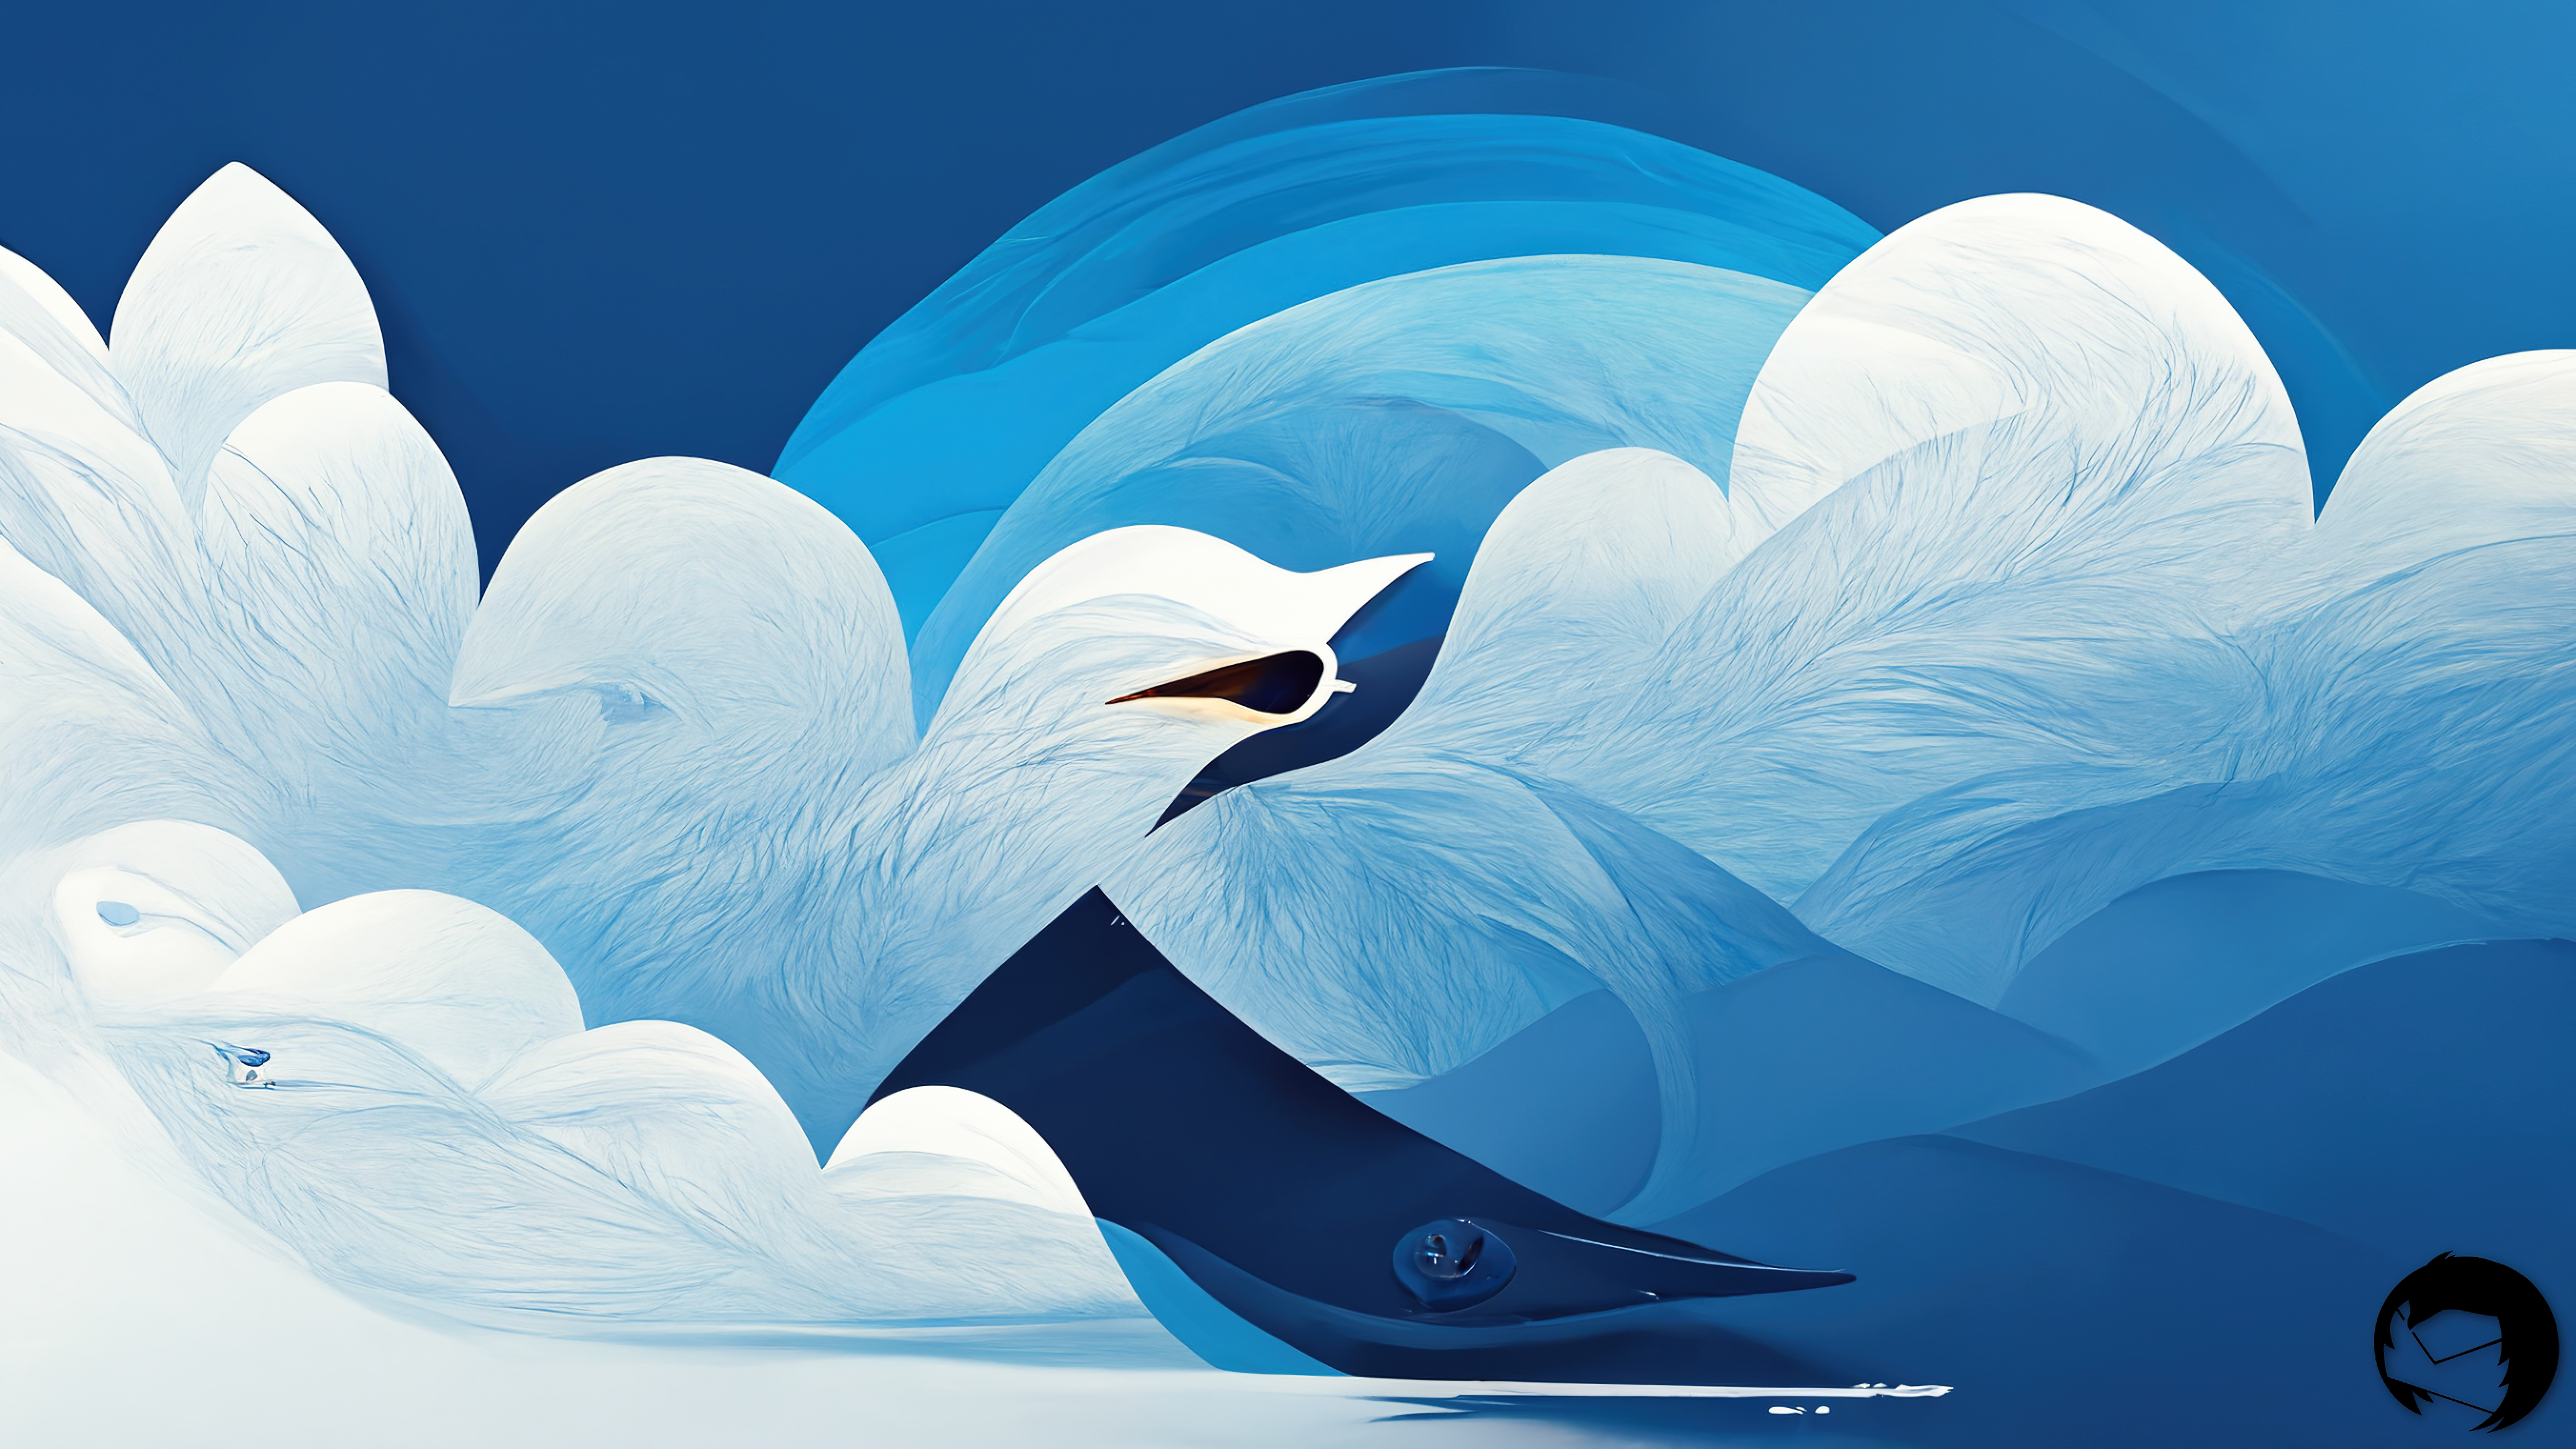 نقاشی گرافیکی خوشگل هوش مصنوعی از پرنده و آسمان به رنگ آبی و سفید زیبا